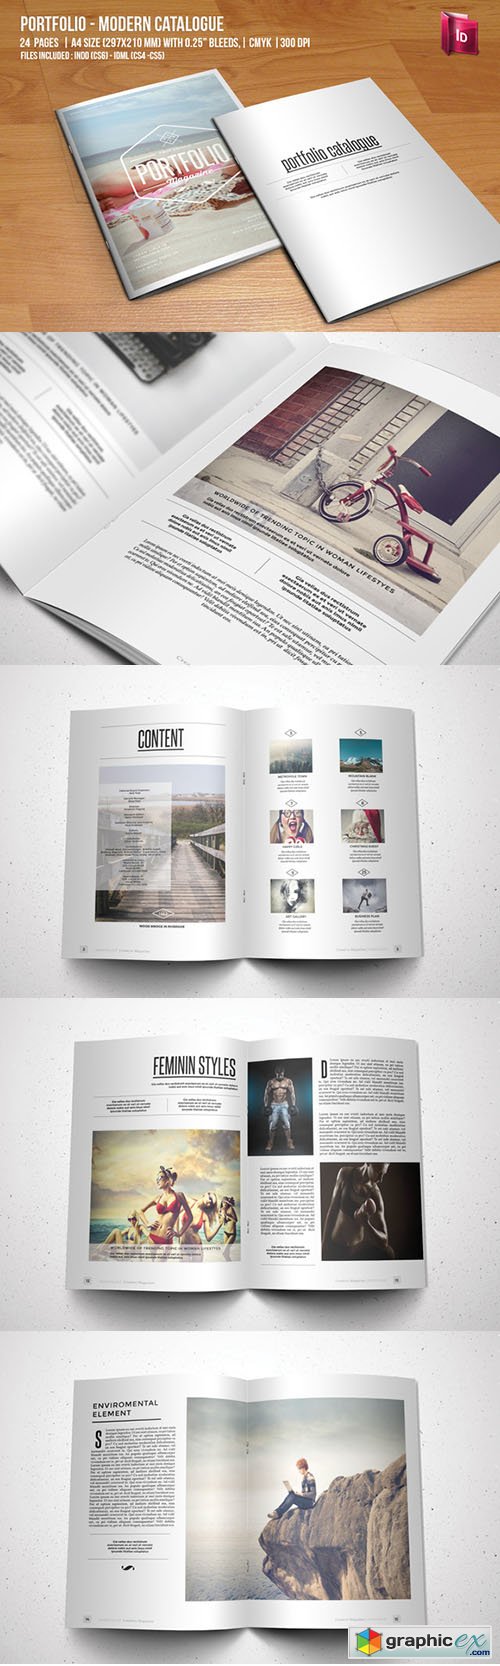  Portfolio - Modern Catalogue